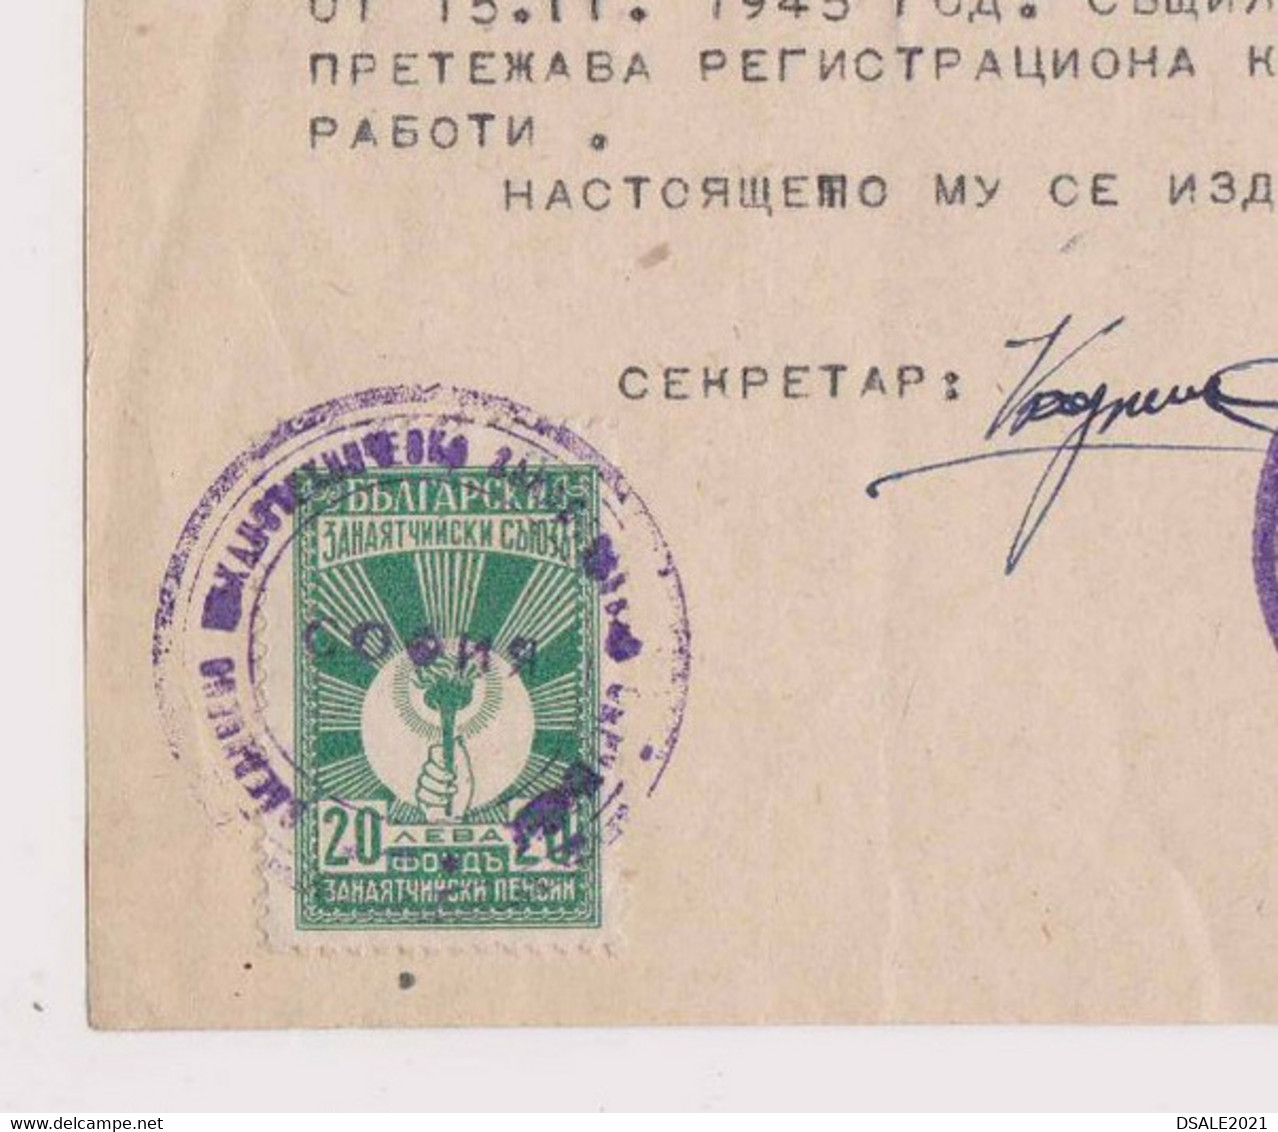 Bulgaria Bulgarie Bulgarije 1945 Certificate For Radio Maker Technician With Rare Fiscla Revenue Stamps Stamp (ds578) - Francobolli Di Servizio